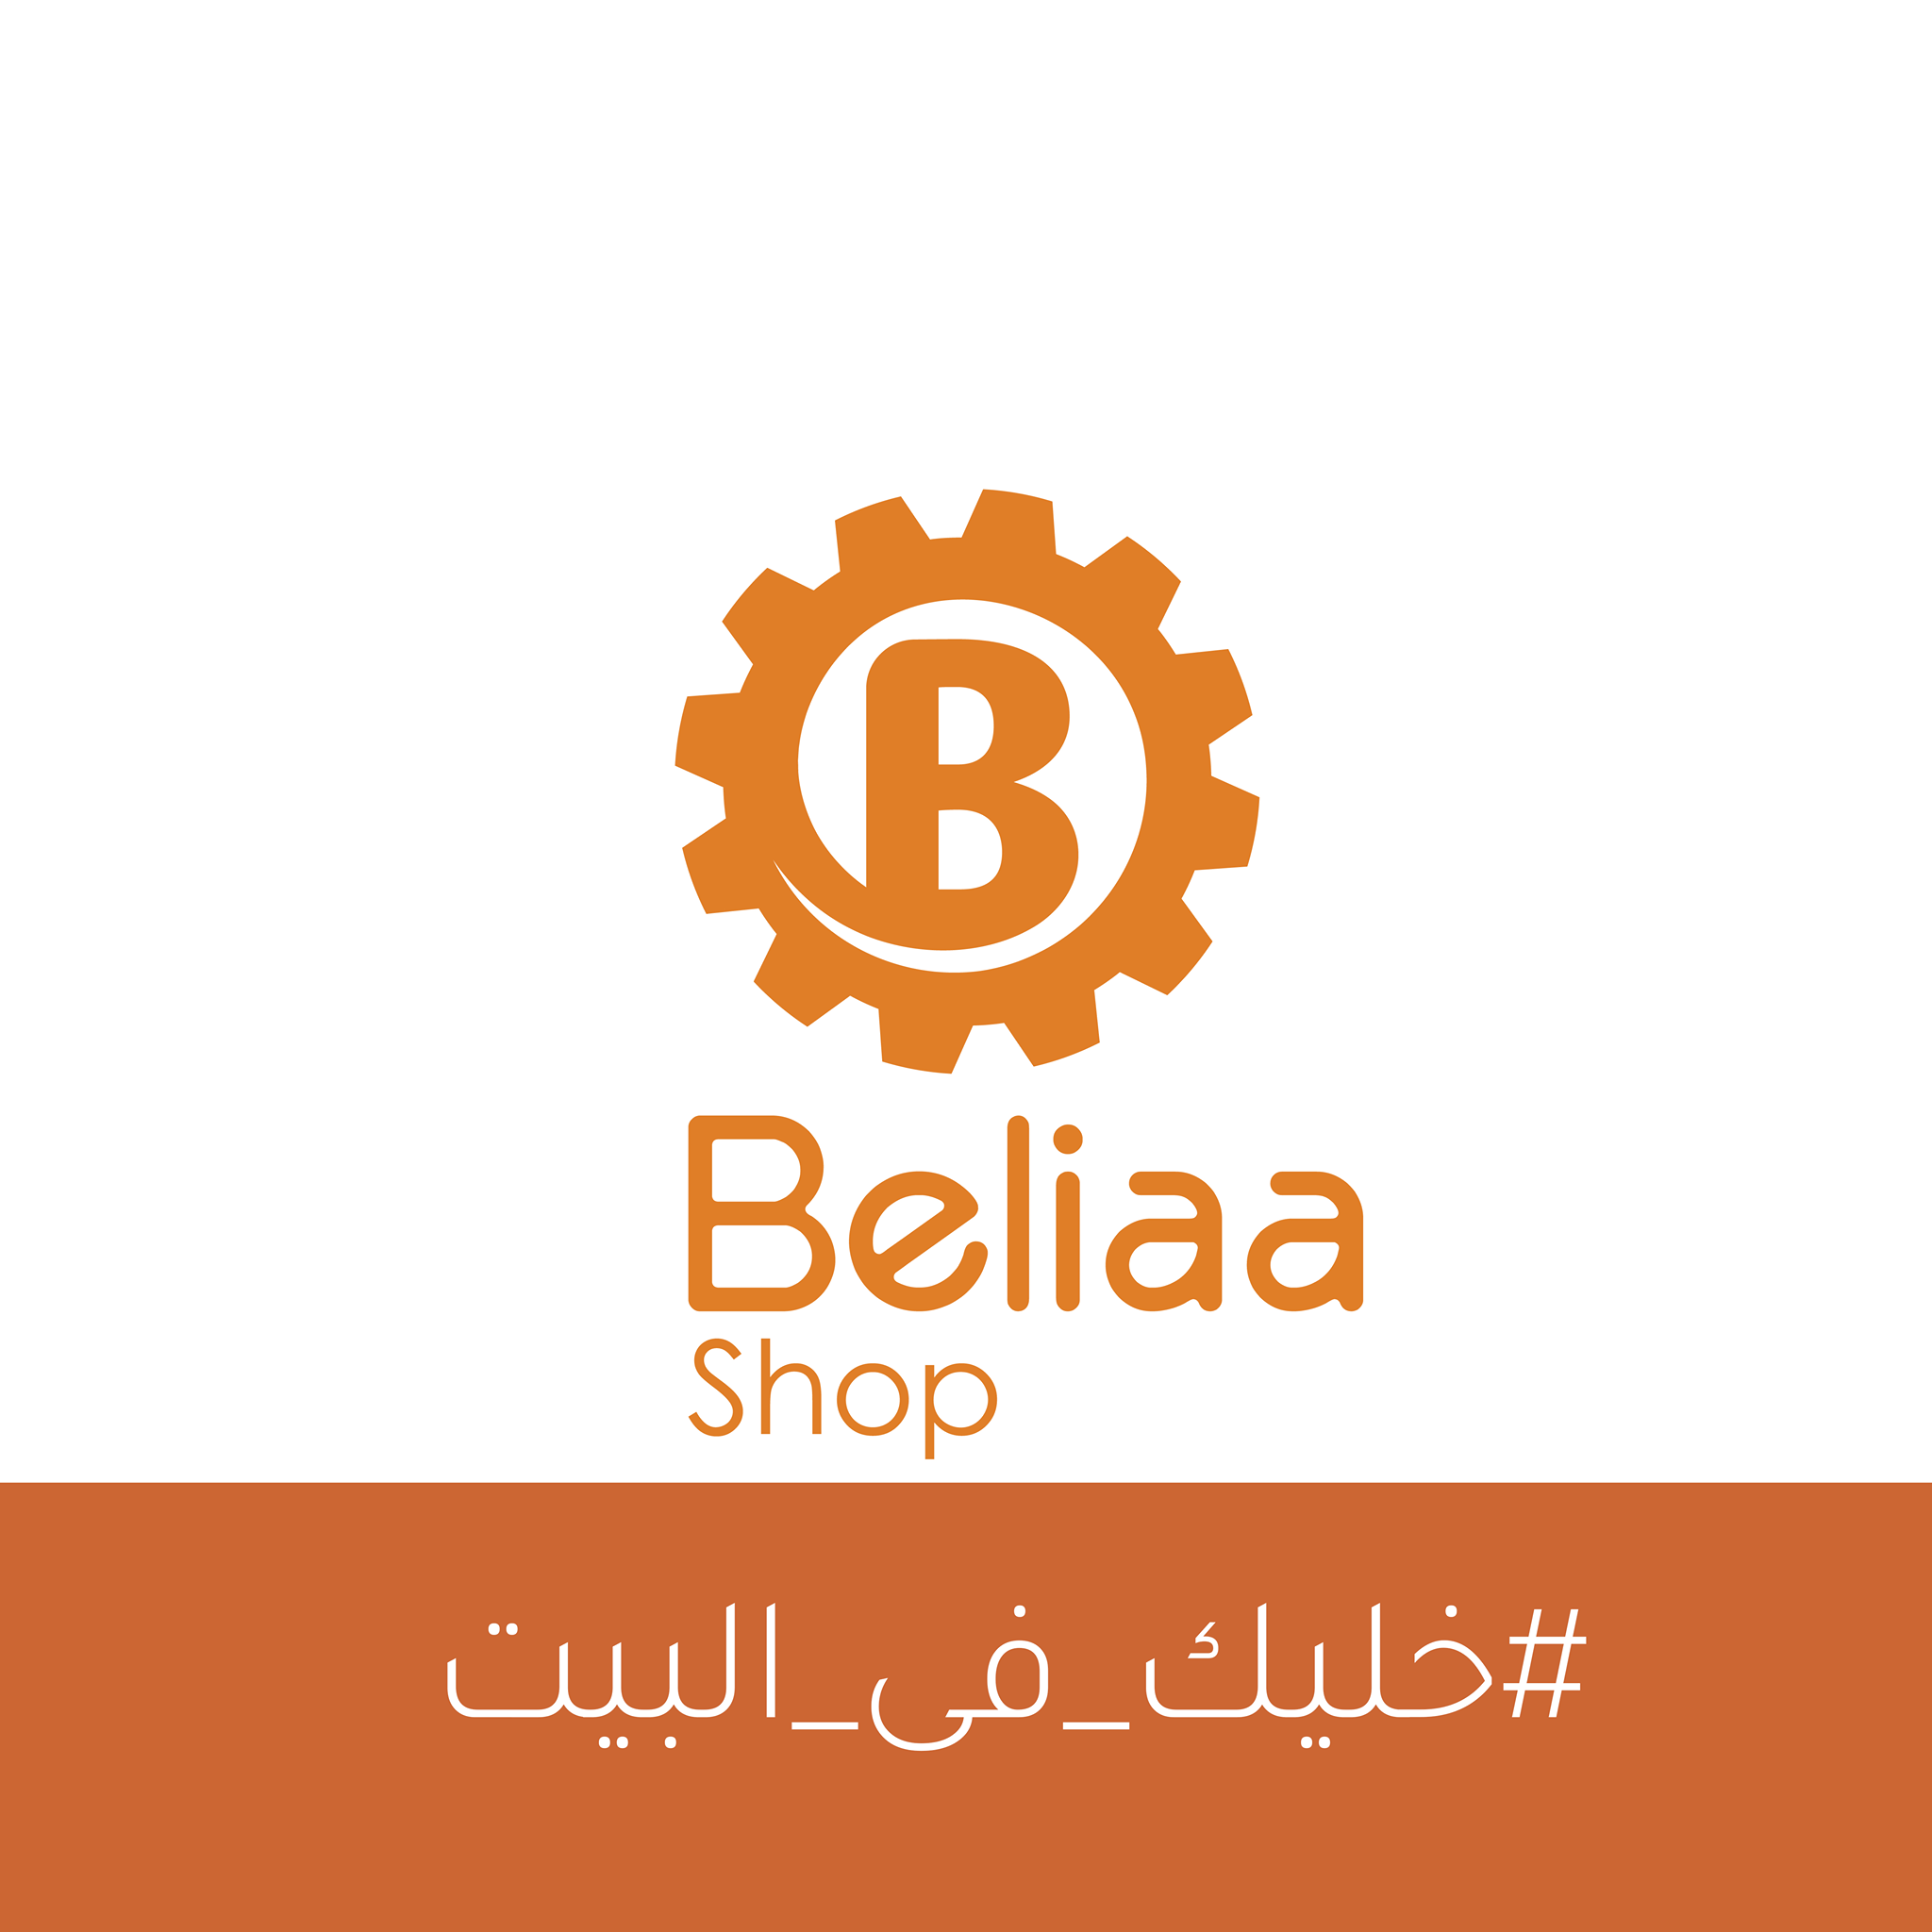 Beliaa Shop